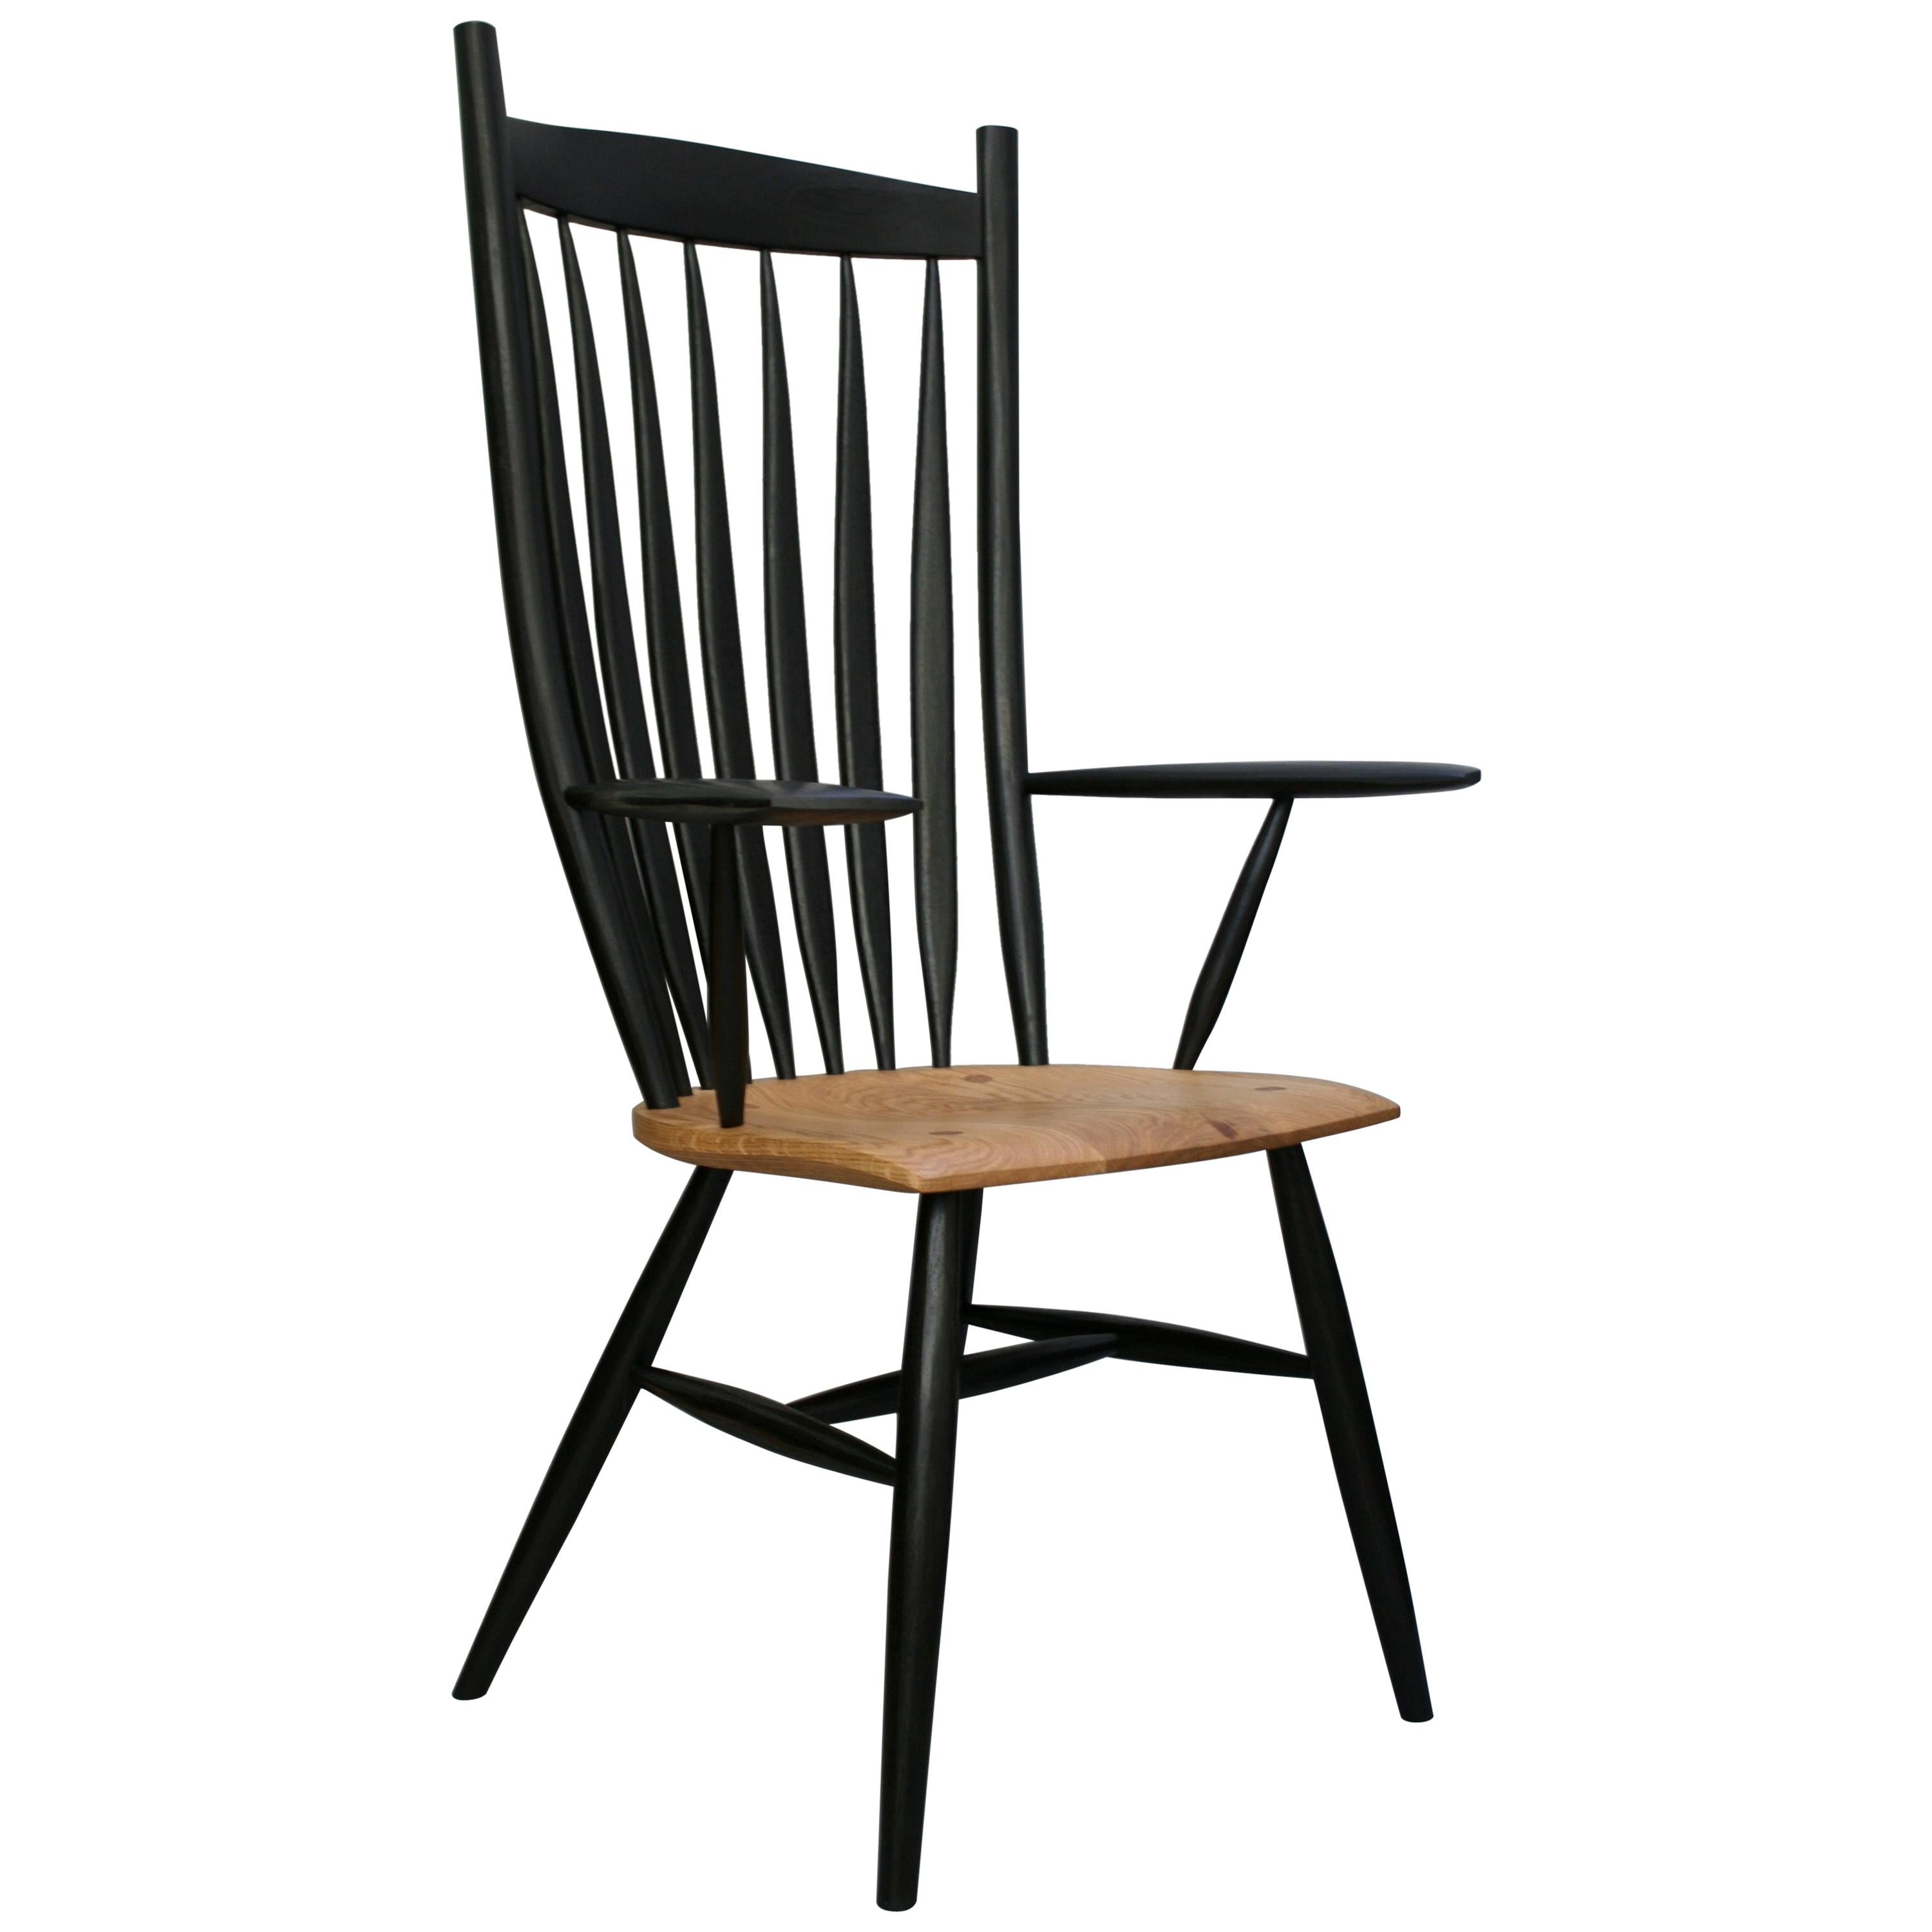 Juego de 10 sillas curvadas por encargo del ebanista alemán Fabian Fischer. (2 sillas con brazo y 8 sillas laterales) Fabricadas según la tradición y la calidad de la artesanía del Studio americano. El precio refleja la silla hecha en roble, pero